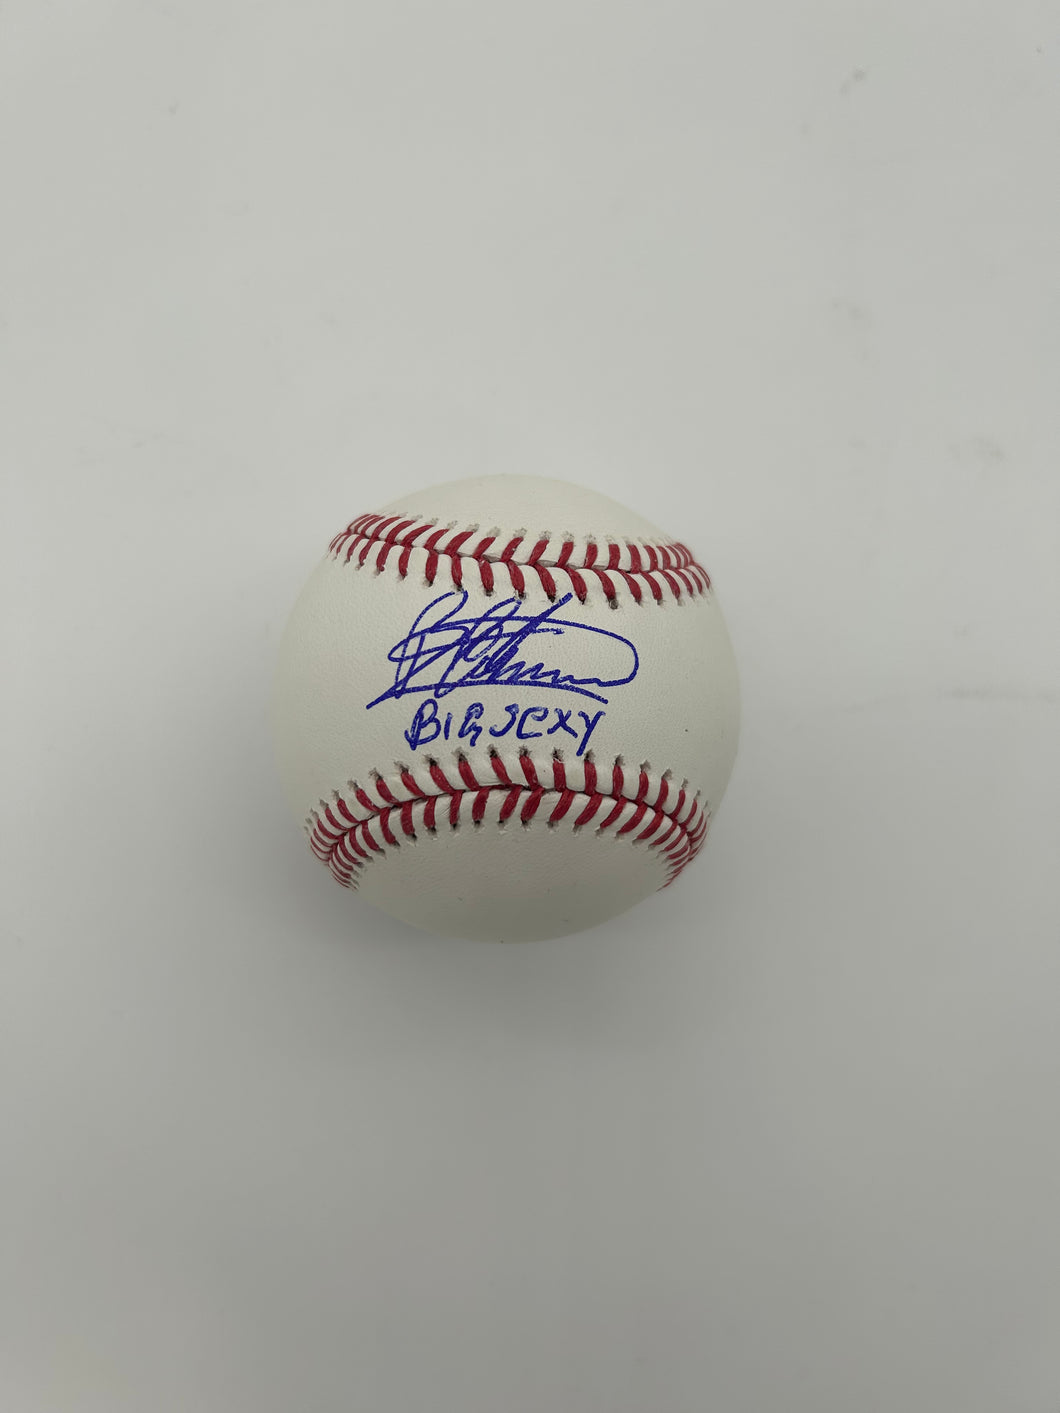 Bartolo Colon signed baseball with Big Sexy inscription